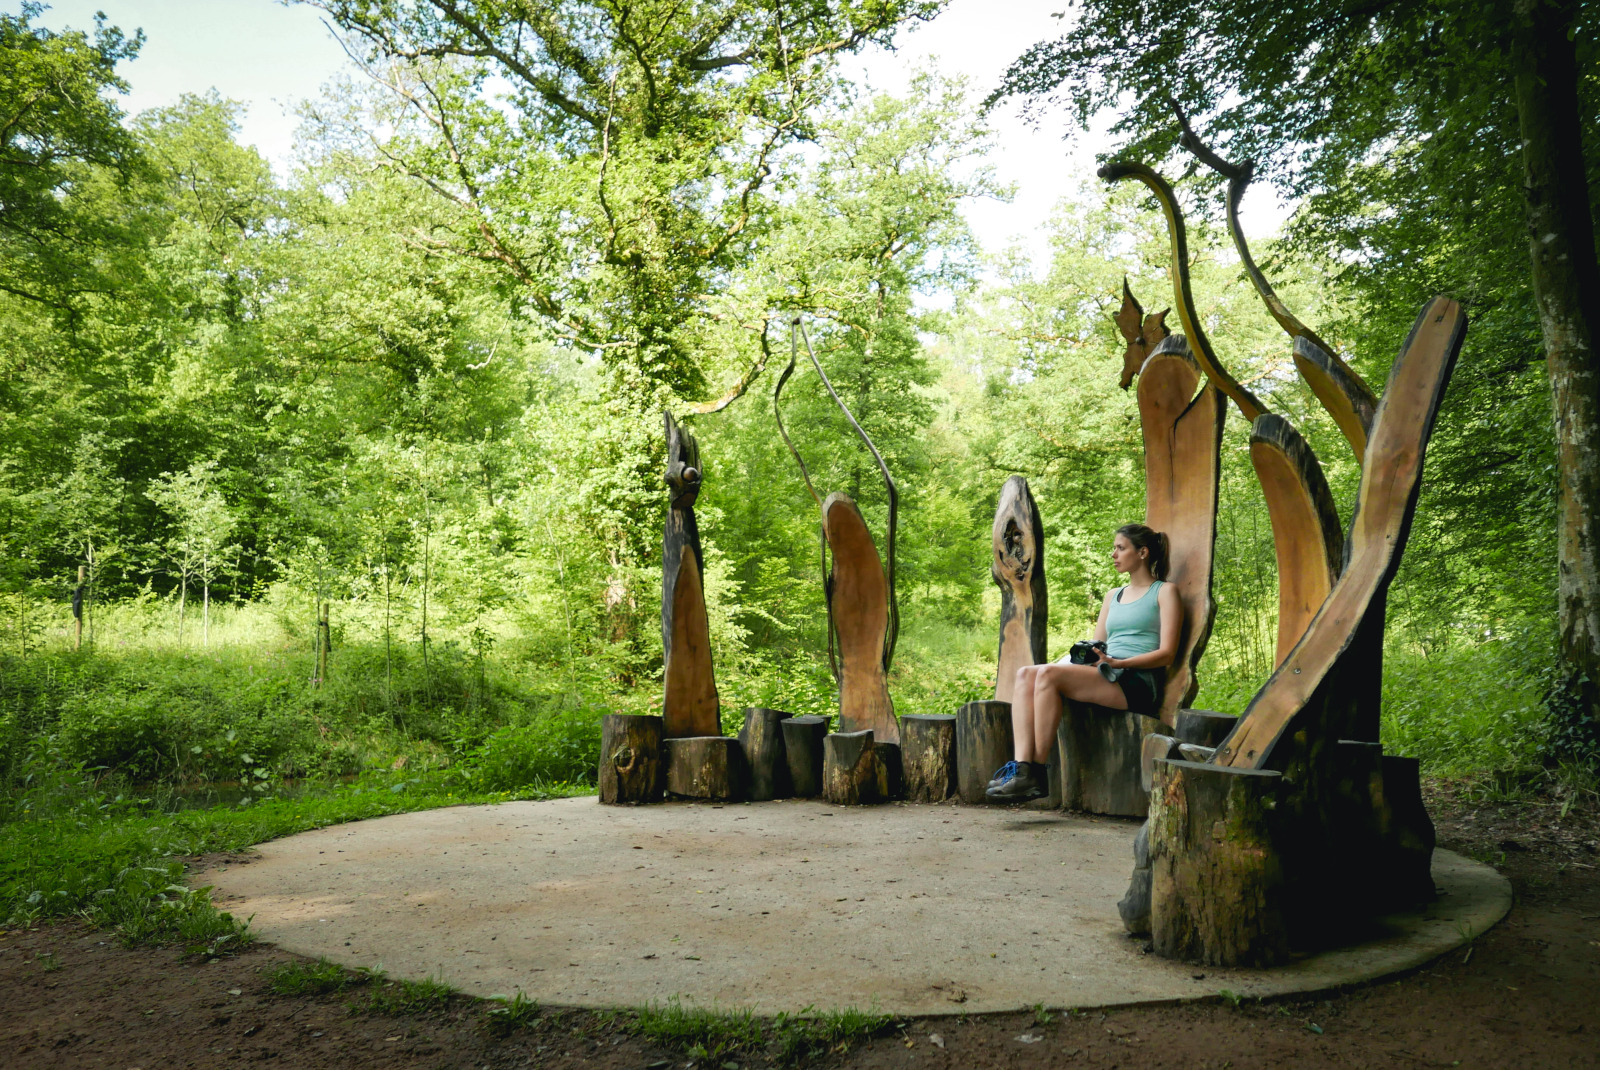 Persoon zittend op een kunstwerk van de Sentiers d'Art, wandeling in Gesves in Wallonië